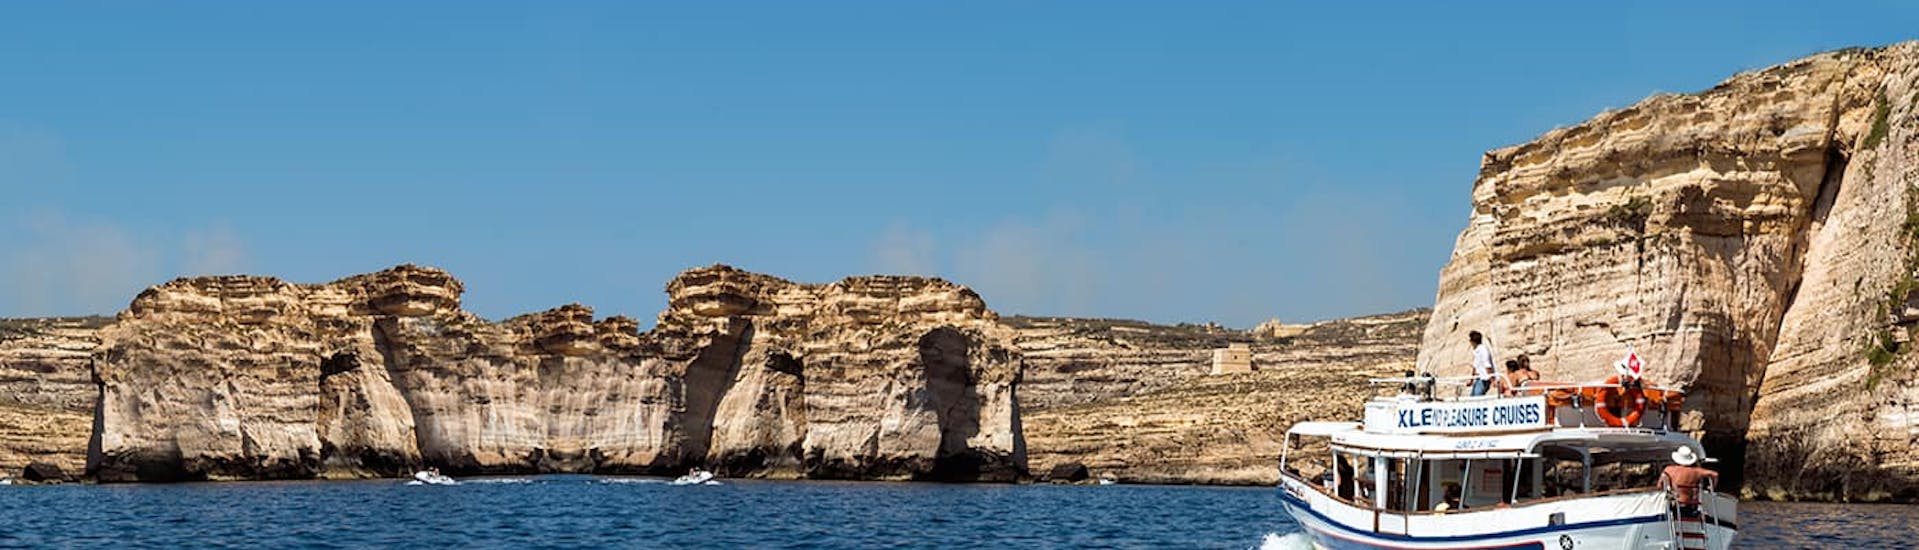 Boot van Xlendi Pleasure Cruises tijdens de privé boottocht vanuit Mgarr rond Comino en Gozo.